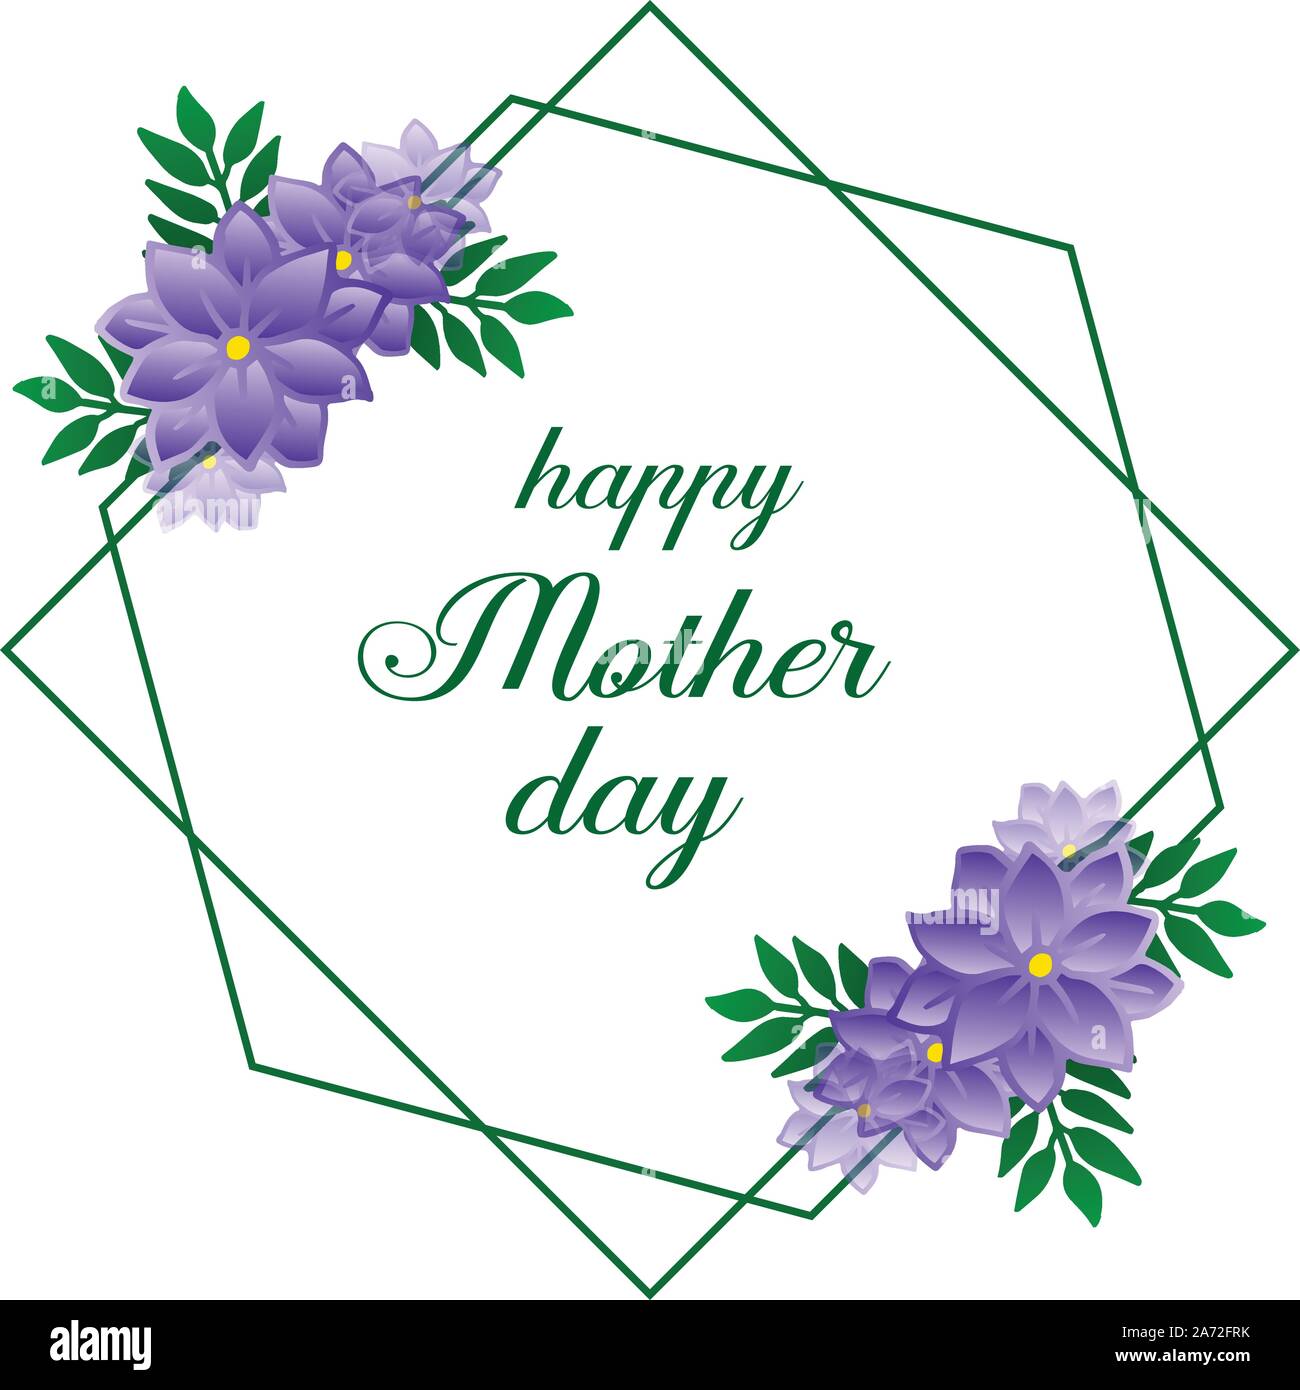 Hình nền hoa tím và thiệp chúc mừng ngày của Mẹ sẽ đem đến sự quan tâm và tình cảm đặc biệt cho người mẹ yêu quý. Hãy cùng chiêm ngưỡng những bông hoa tím đầy màu sắc và thiết kế thiện cảm, để gửi lời chúc tốt đẹp nhất đến người mẹ của bạn.